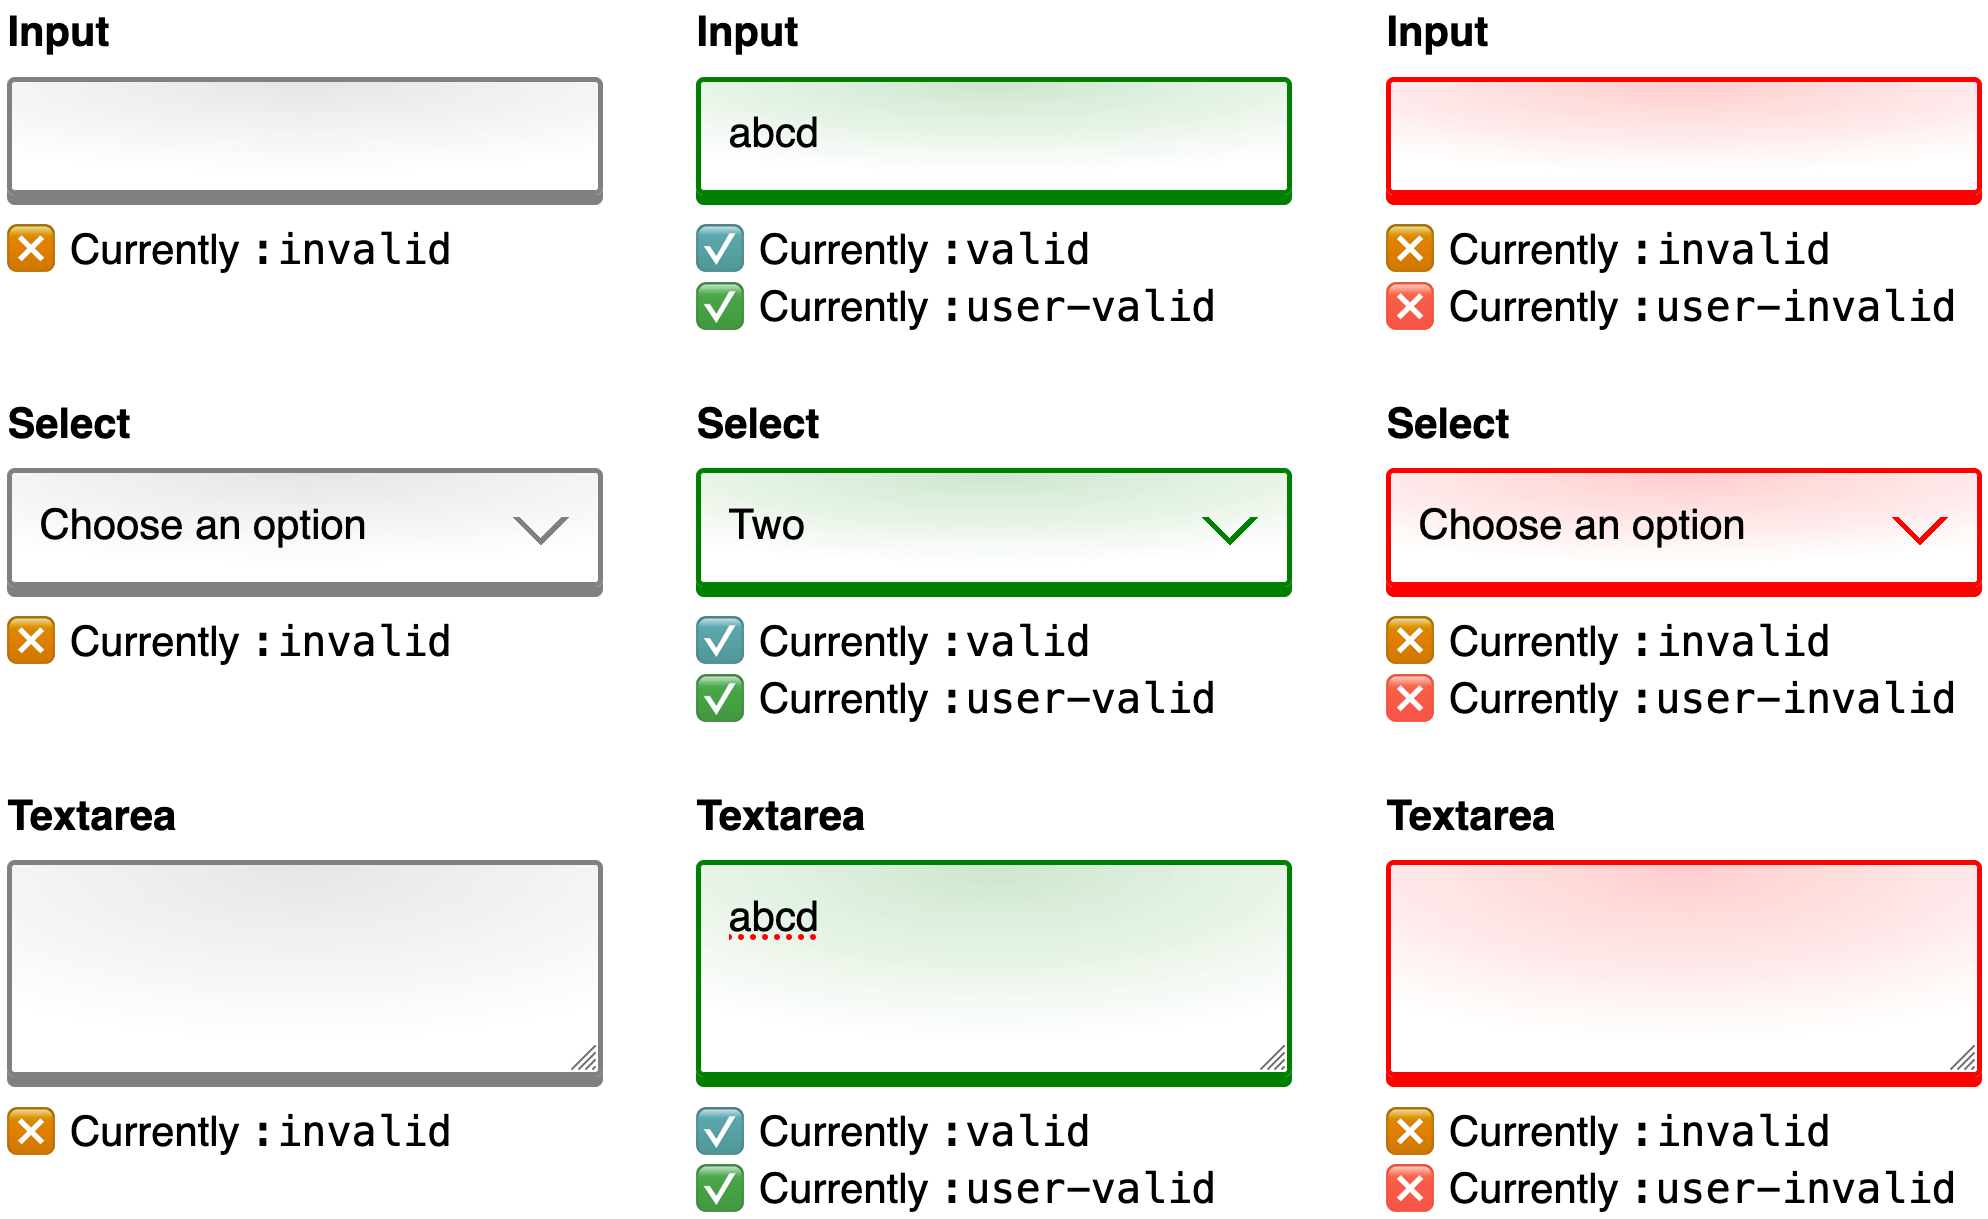 ऐसी इमेज जिसमें तुलना करने के लिए तीन स्क्रीनशॉट को एक साथ दिखाया गया है. हर स्क्रीनशॉट में एक वेब फ़ॉर्म दिखता है. इसमें एक जैसे इनपुट, टेक्स्ट, और टेक्स्टएरिया कंट्रोल मौजूद होते हैं. पहला स्क्रीनशॉट, किसी उपयोगकर्ता के इनपुट से पहले फ़ॉर्म को उसकी शुरुआती स्थिति में दिखाता है. कंट्रोल बॉर्डर स्लेटी रंग के होते हैं और नीचे दिए गए सहायता टेक्स्ट में बताया गया है कि फ़िलहाल हर कंट्रोल, :अमान्य सूडो-क्लास सिलेक्टर से मेल खाएगा. जब उपयोगकर्ता हर कंट्रोल के लिए इनपुट दे देता है, तब दूसरे स्क्रीनशॉट में वही फ़ॉर्म दिखता है. कंट्रोल बॉर्डर हरे रंग के होते हैं. साथ ही, सहायता टेक्स्ट में बताया गया है कि हर कंट्रोल, फ़िलहाल :मान्य और :उपयोगकर्ता-मान्य pseudo-class सिलेक्टर, दोनों से मेल खाएगा. जब कोई उपयोगकर्ता अपने सभी इनपुट हटा देता है, तब तीसरे और आखिरी स्क्रीनशॉट में वही फ़ॉर्म दिखता है. कंट्रोल बॉर्डर लाल रंग के होते हैं. साथ ही, यहां दिए गए सहायता टेक्स्ट में बताया गया है कि फ़िलहाल हर कंट्रोल, :अमान्य और :user-अमान्य, बदली हुई स्यूडो-क्लास सिलेक्टर, दोनों से मेल खाएगा.